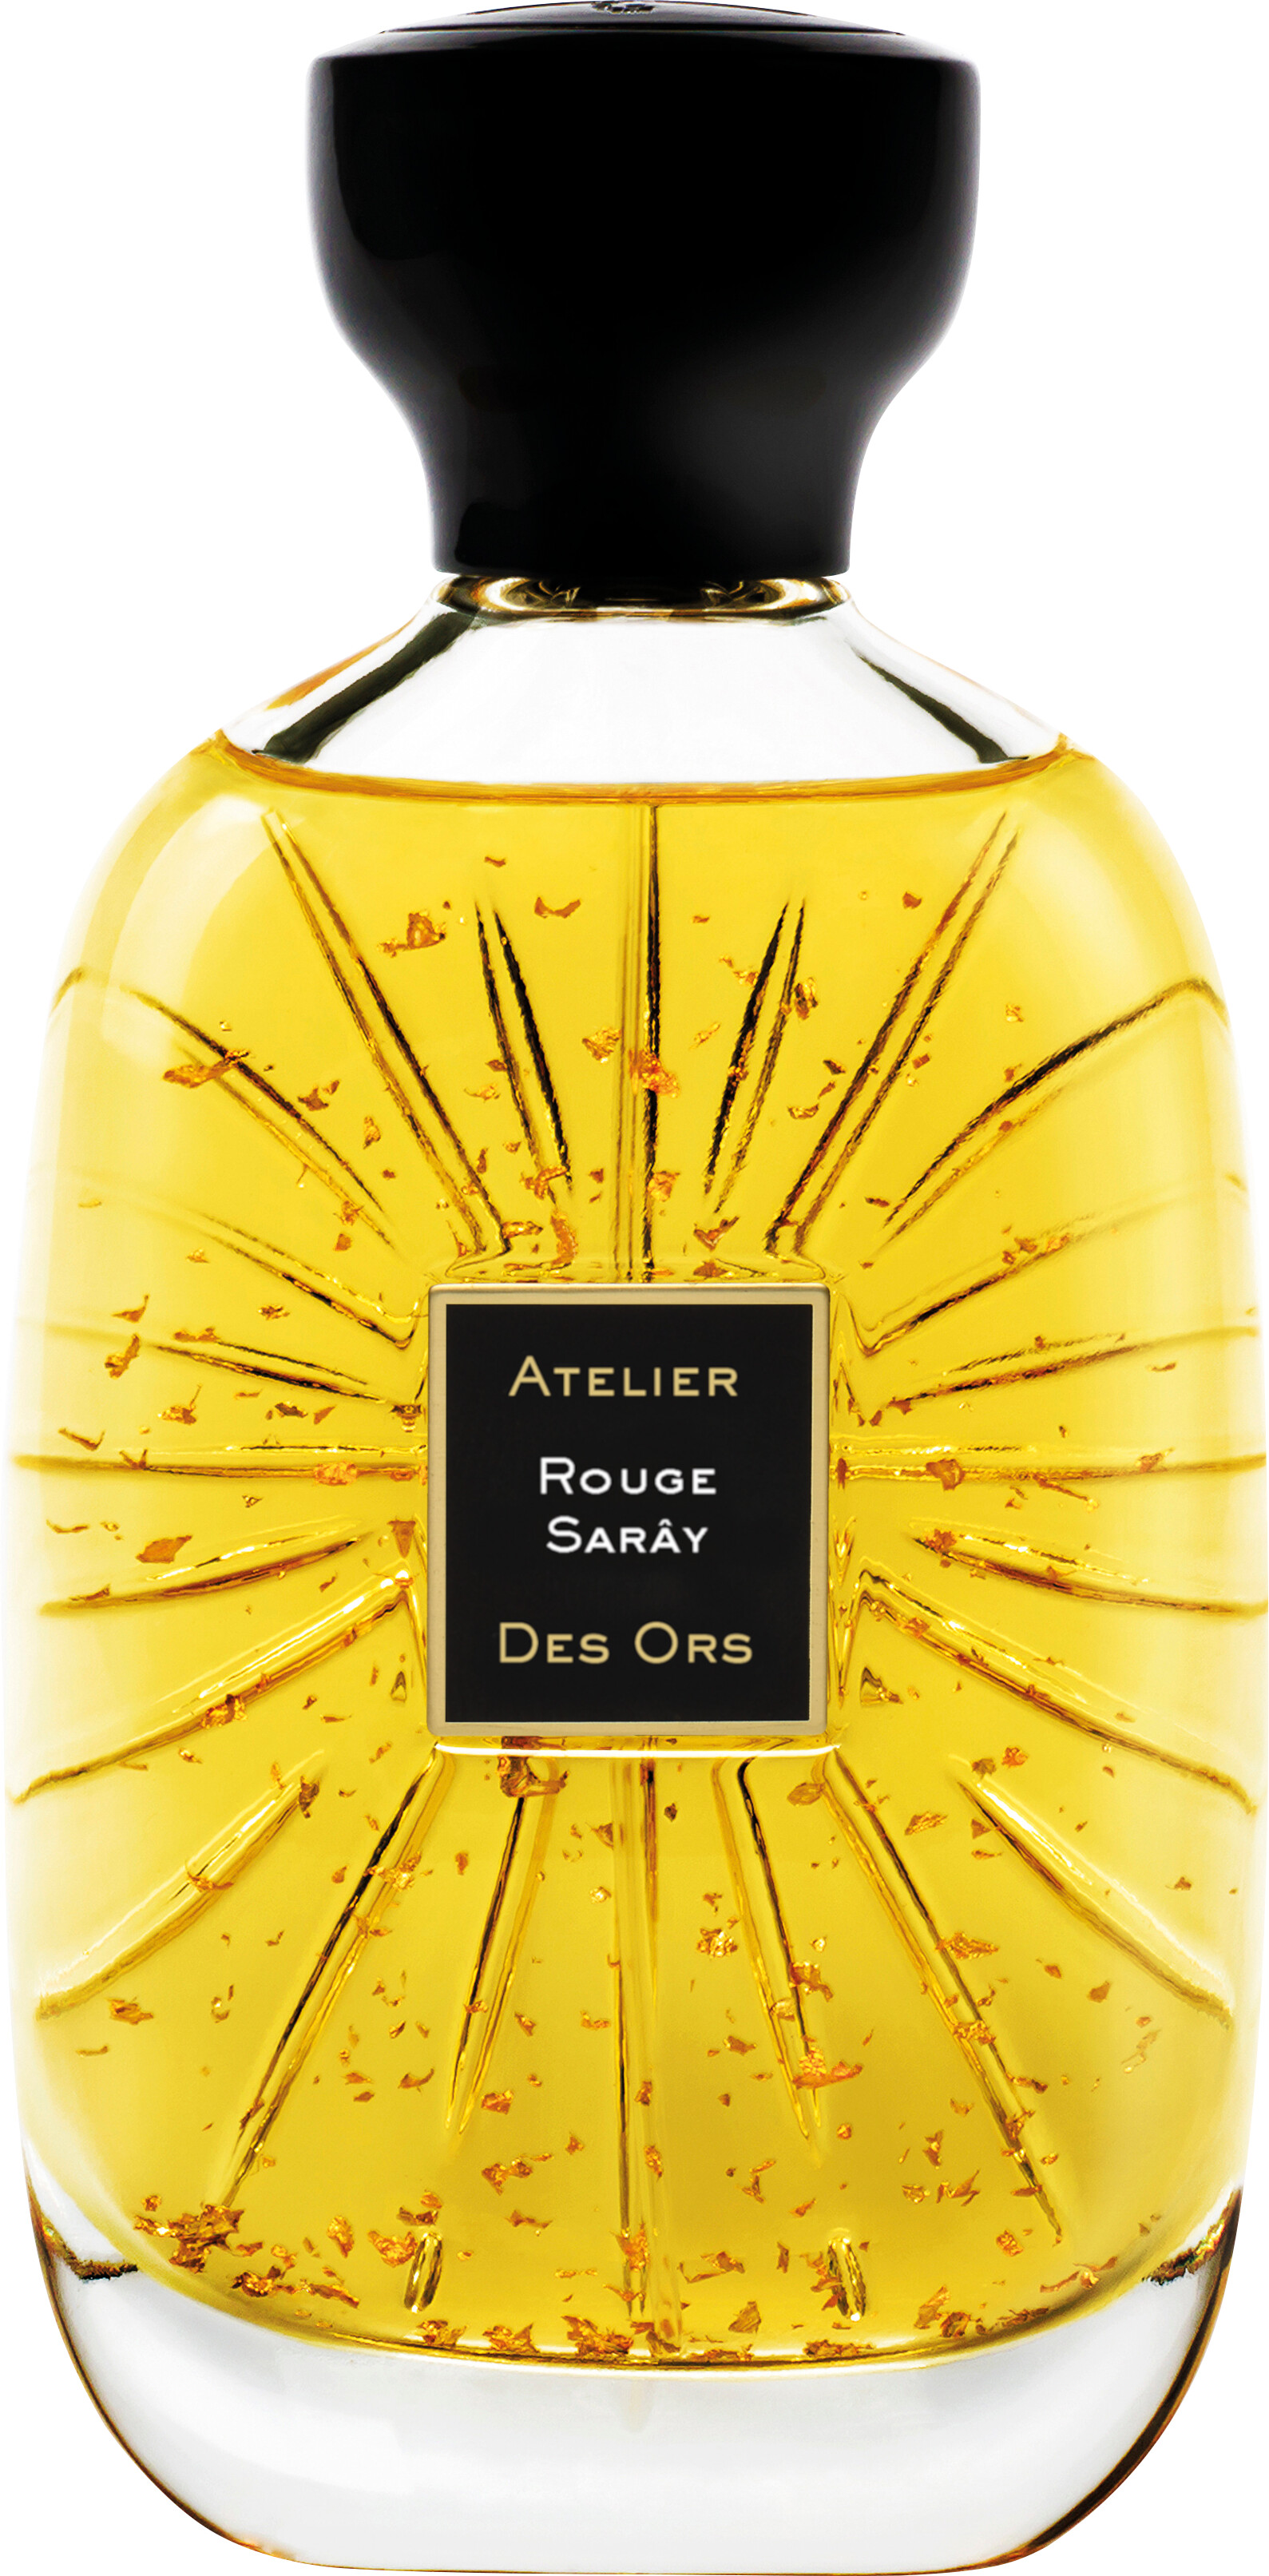 Atelier Des Ors Rouge Saray Eau de Parfum Spray 100ml